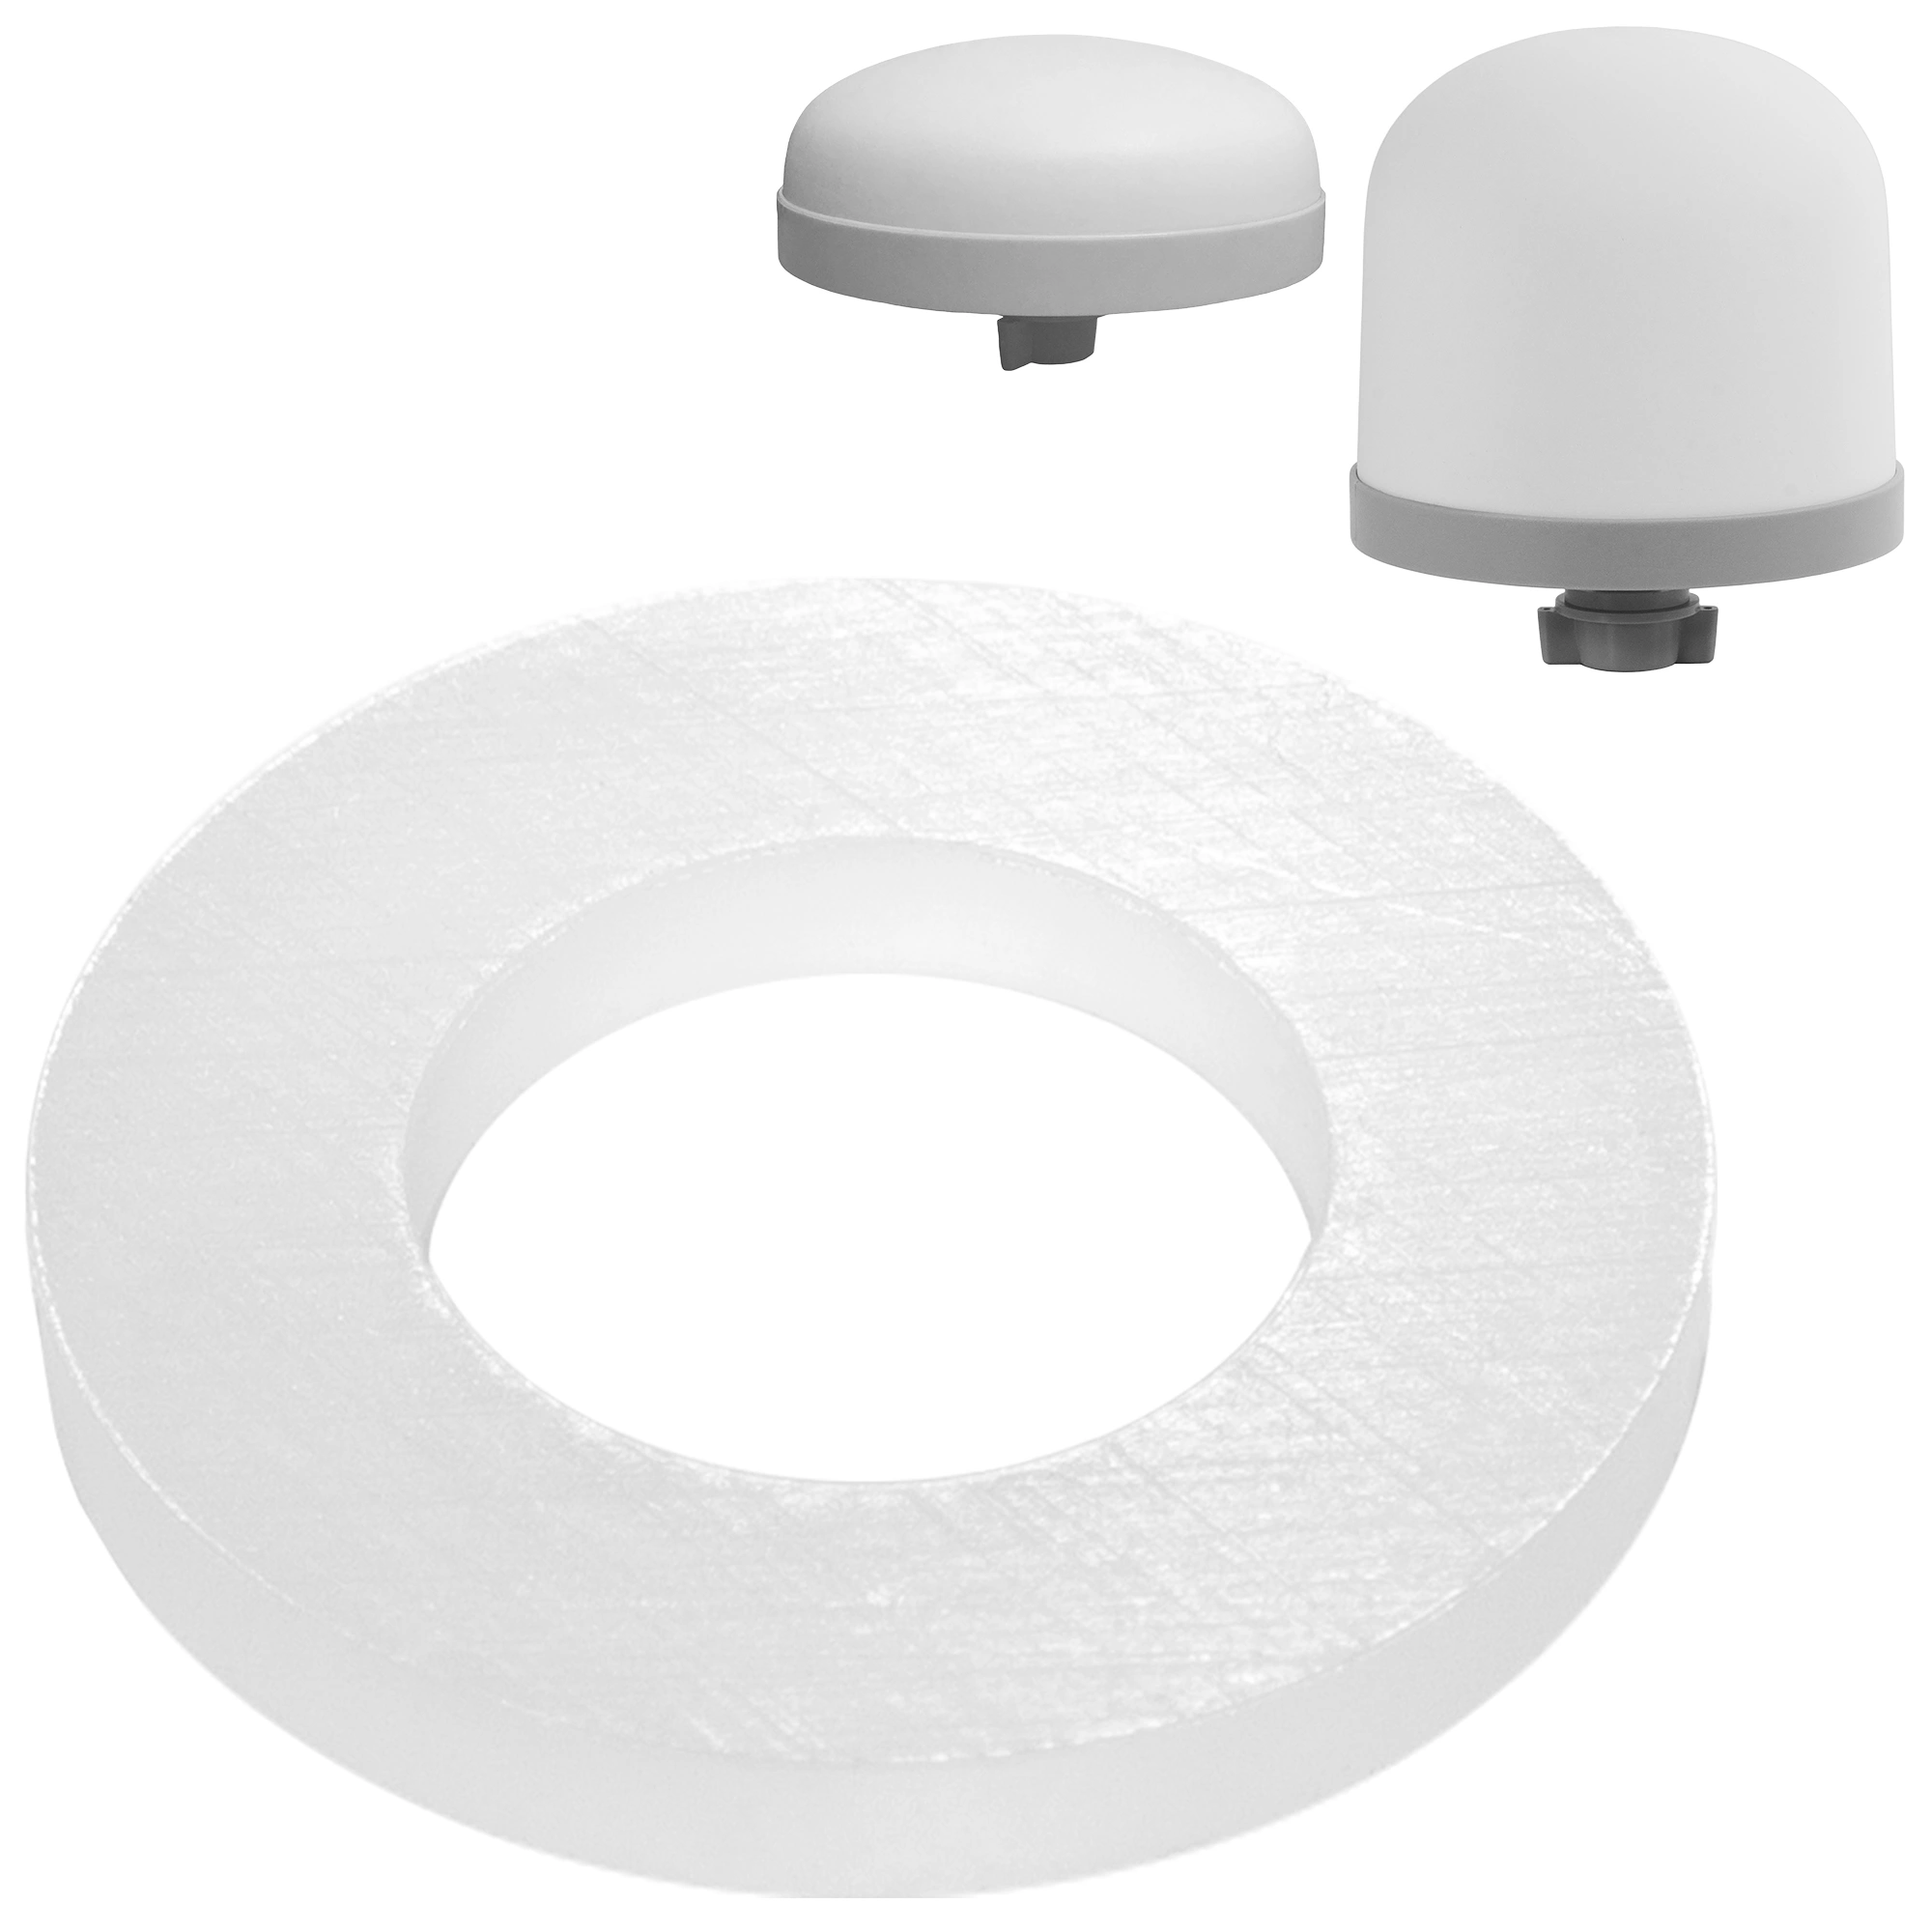 Zu sehen ist eine runde, weiße Silikondichtung für den Keramik Vorfilter der Acala Standwasserfilter in Großaufnahme vor weißem Hintergrund. Darüber sieht man beide Modelle der Keramik Vorfilter in klein abgebildet.